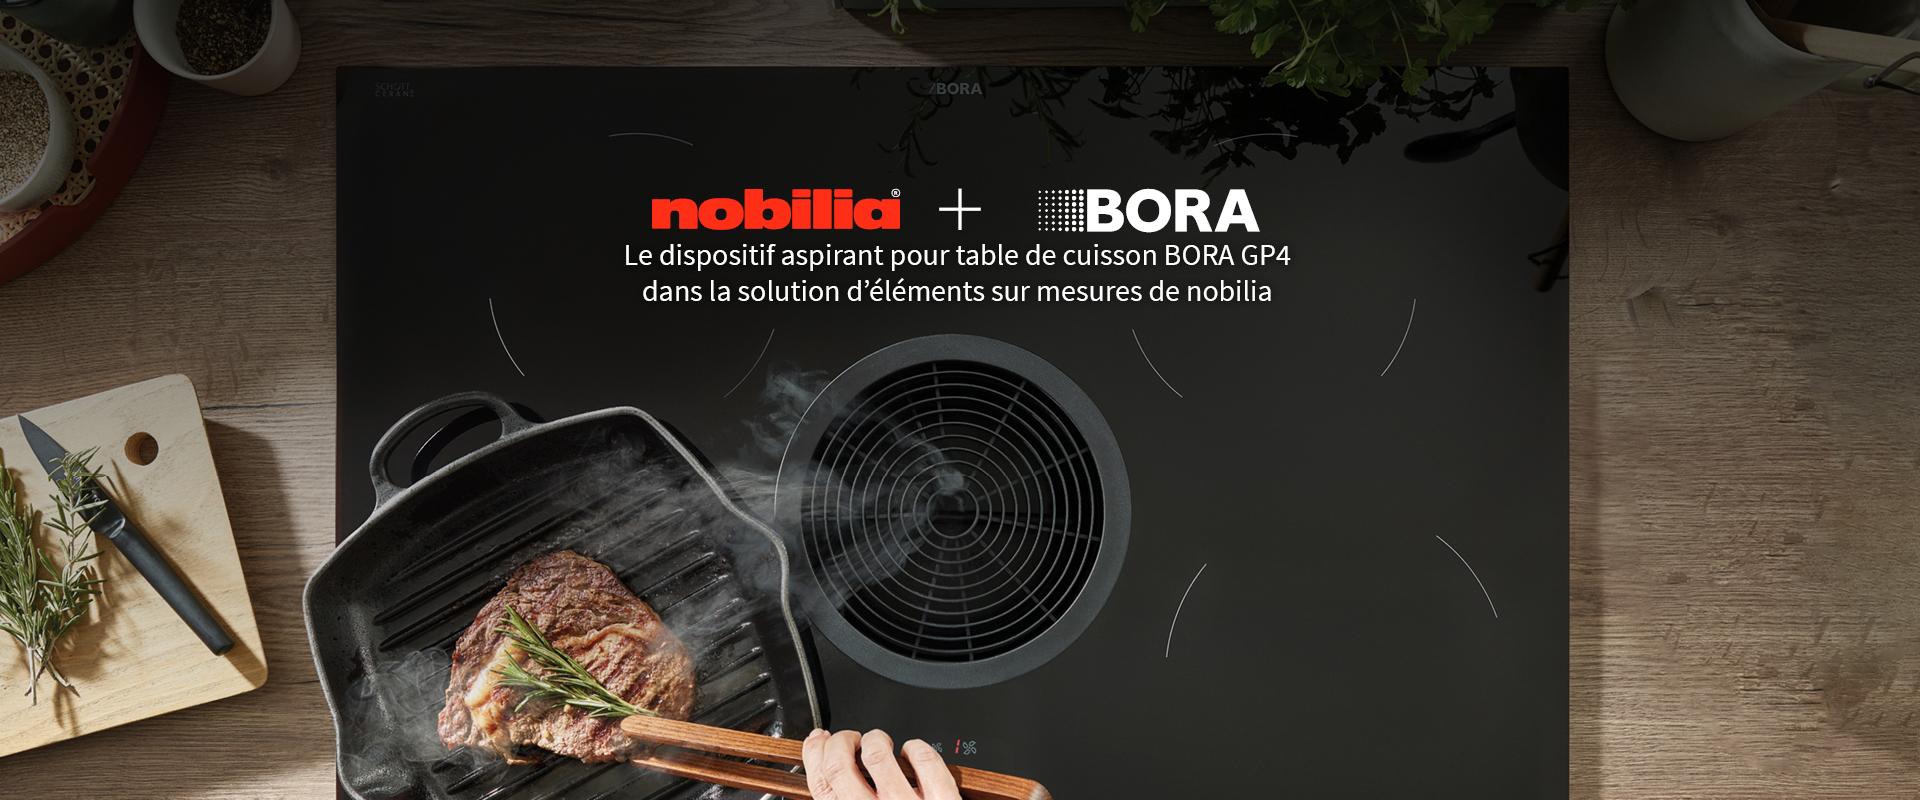 Le dispositif aspirant pour table de cuisson BORA GP4 dans la solution d’éléments sur mesures de nobilia